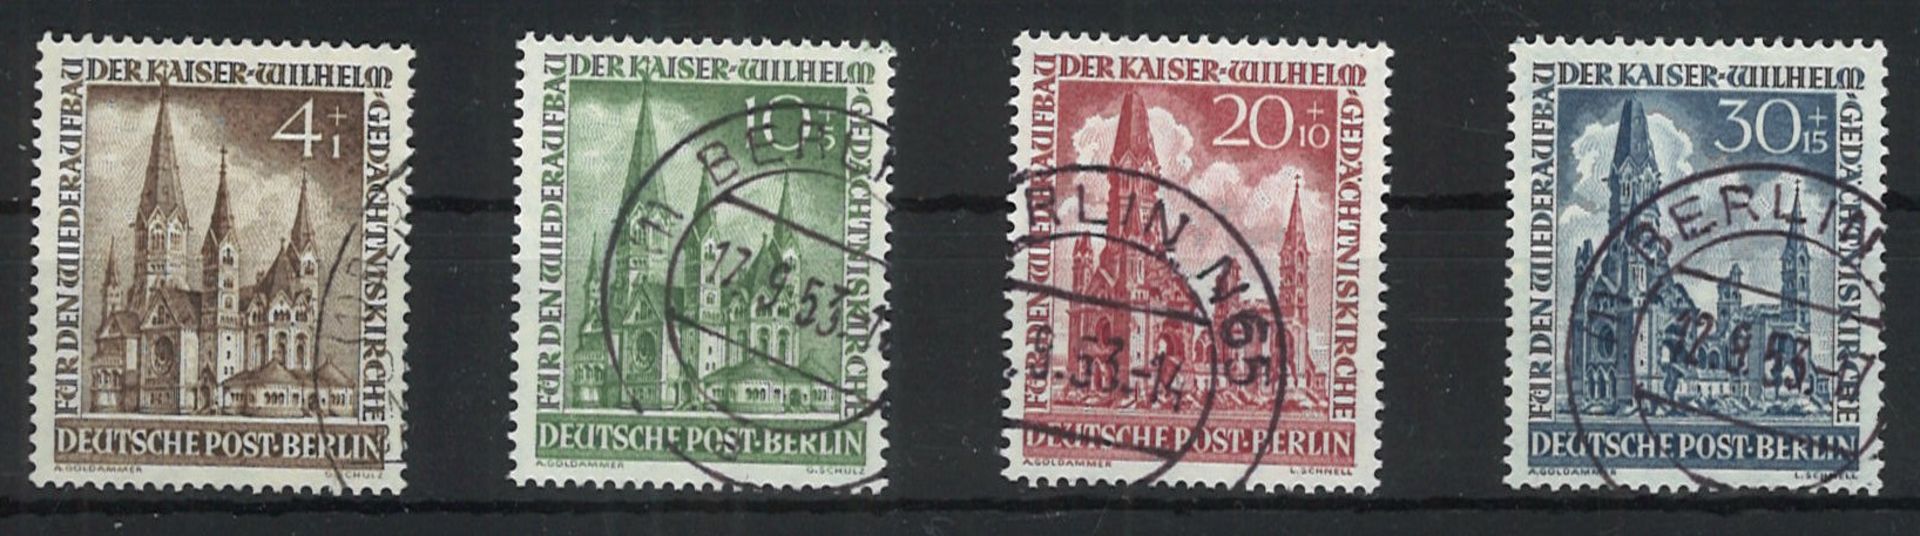 Berlin 1953, Michel Nr. 106-109, gestempelt